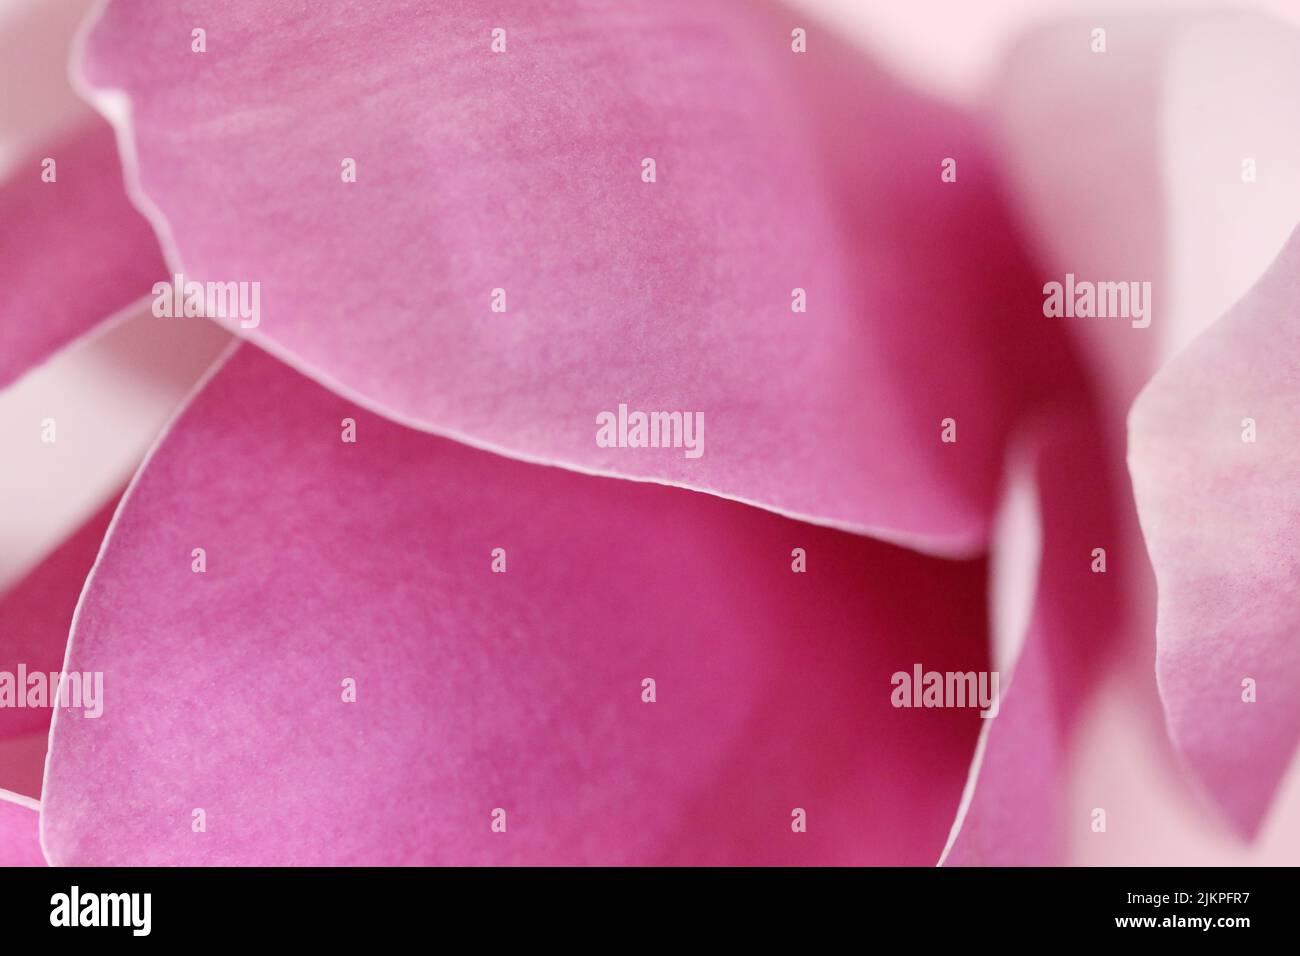 Un macro extremo de los pliegues y formas pétalo dentro de una hermosa flor o flor de Magnolia rosa. Fondo de textura suave abstracta Foto de stock